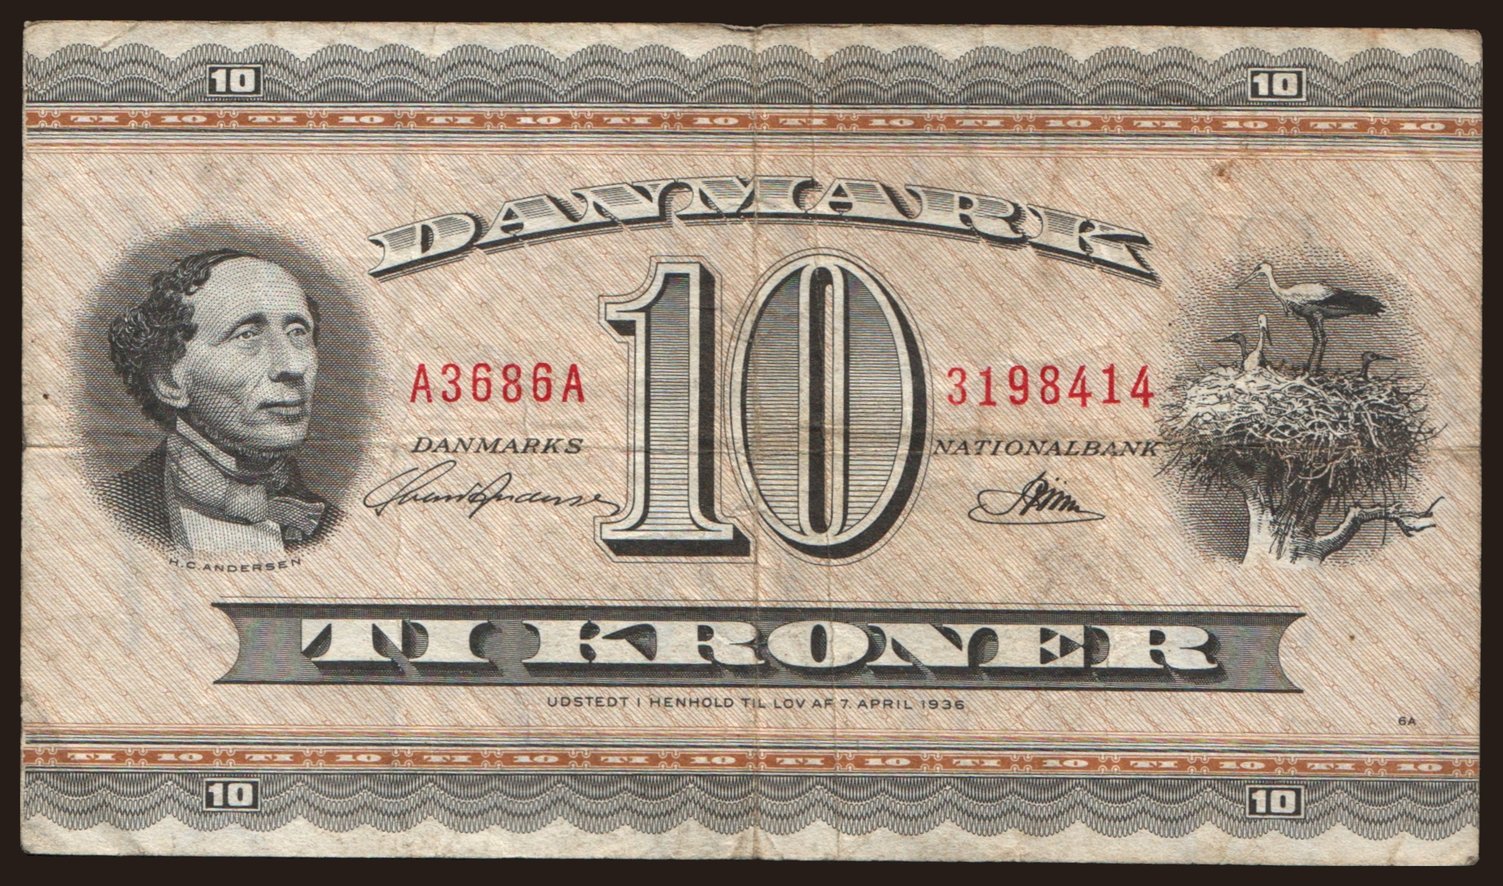 10 kroner, 1936 (1968)